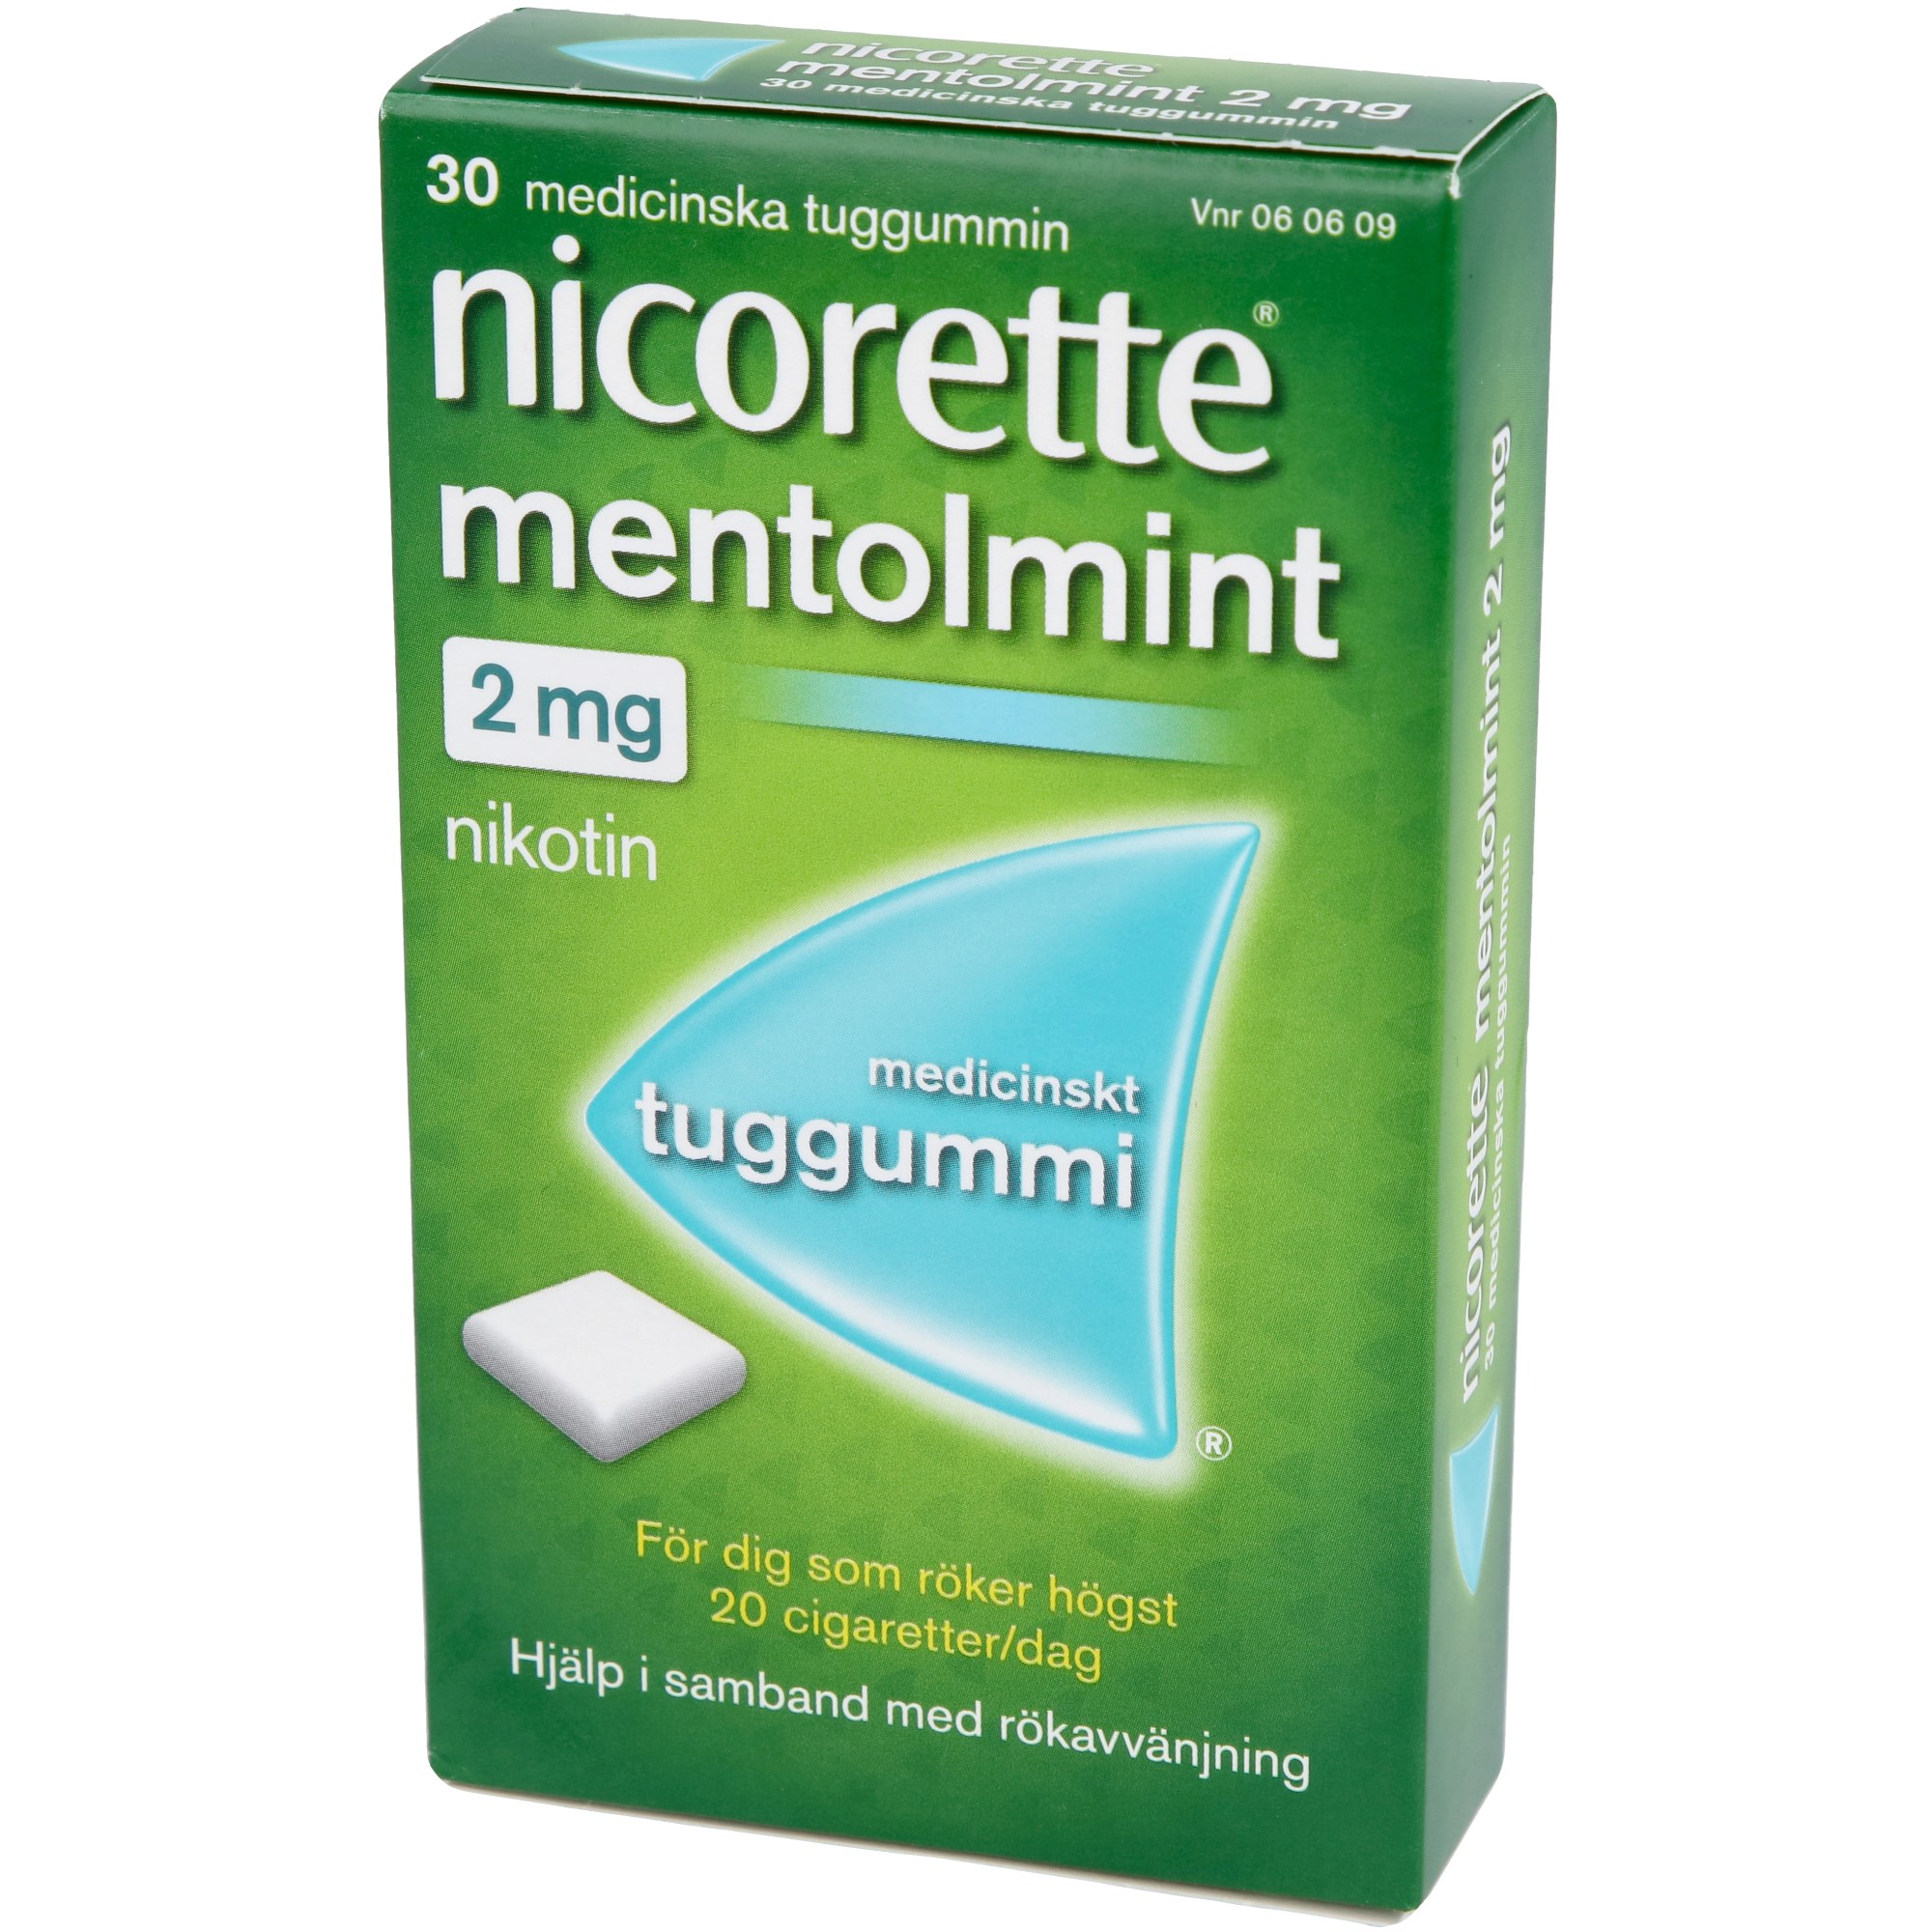 Läs mer om Nicorette Medicinskt tuggummi Mentholmint 2mg 30 st